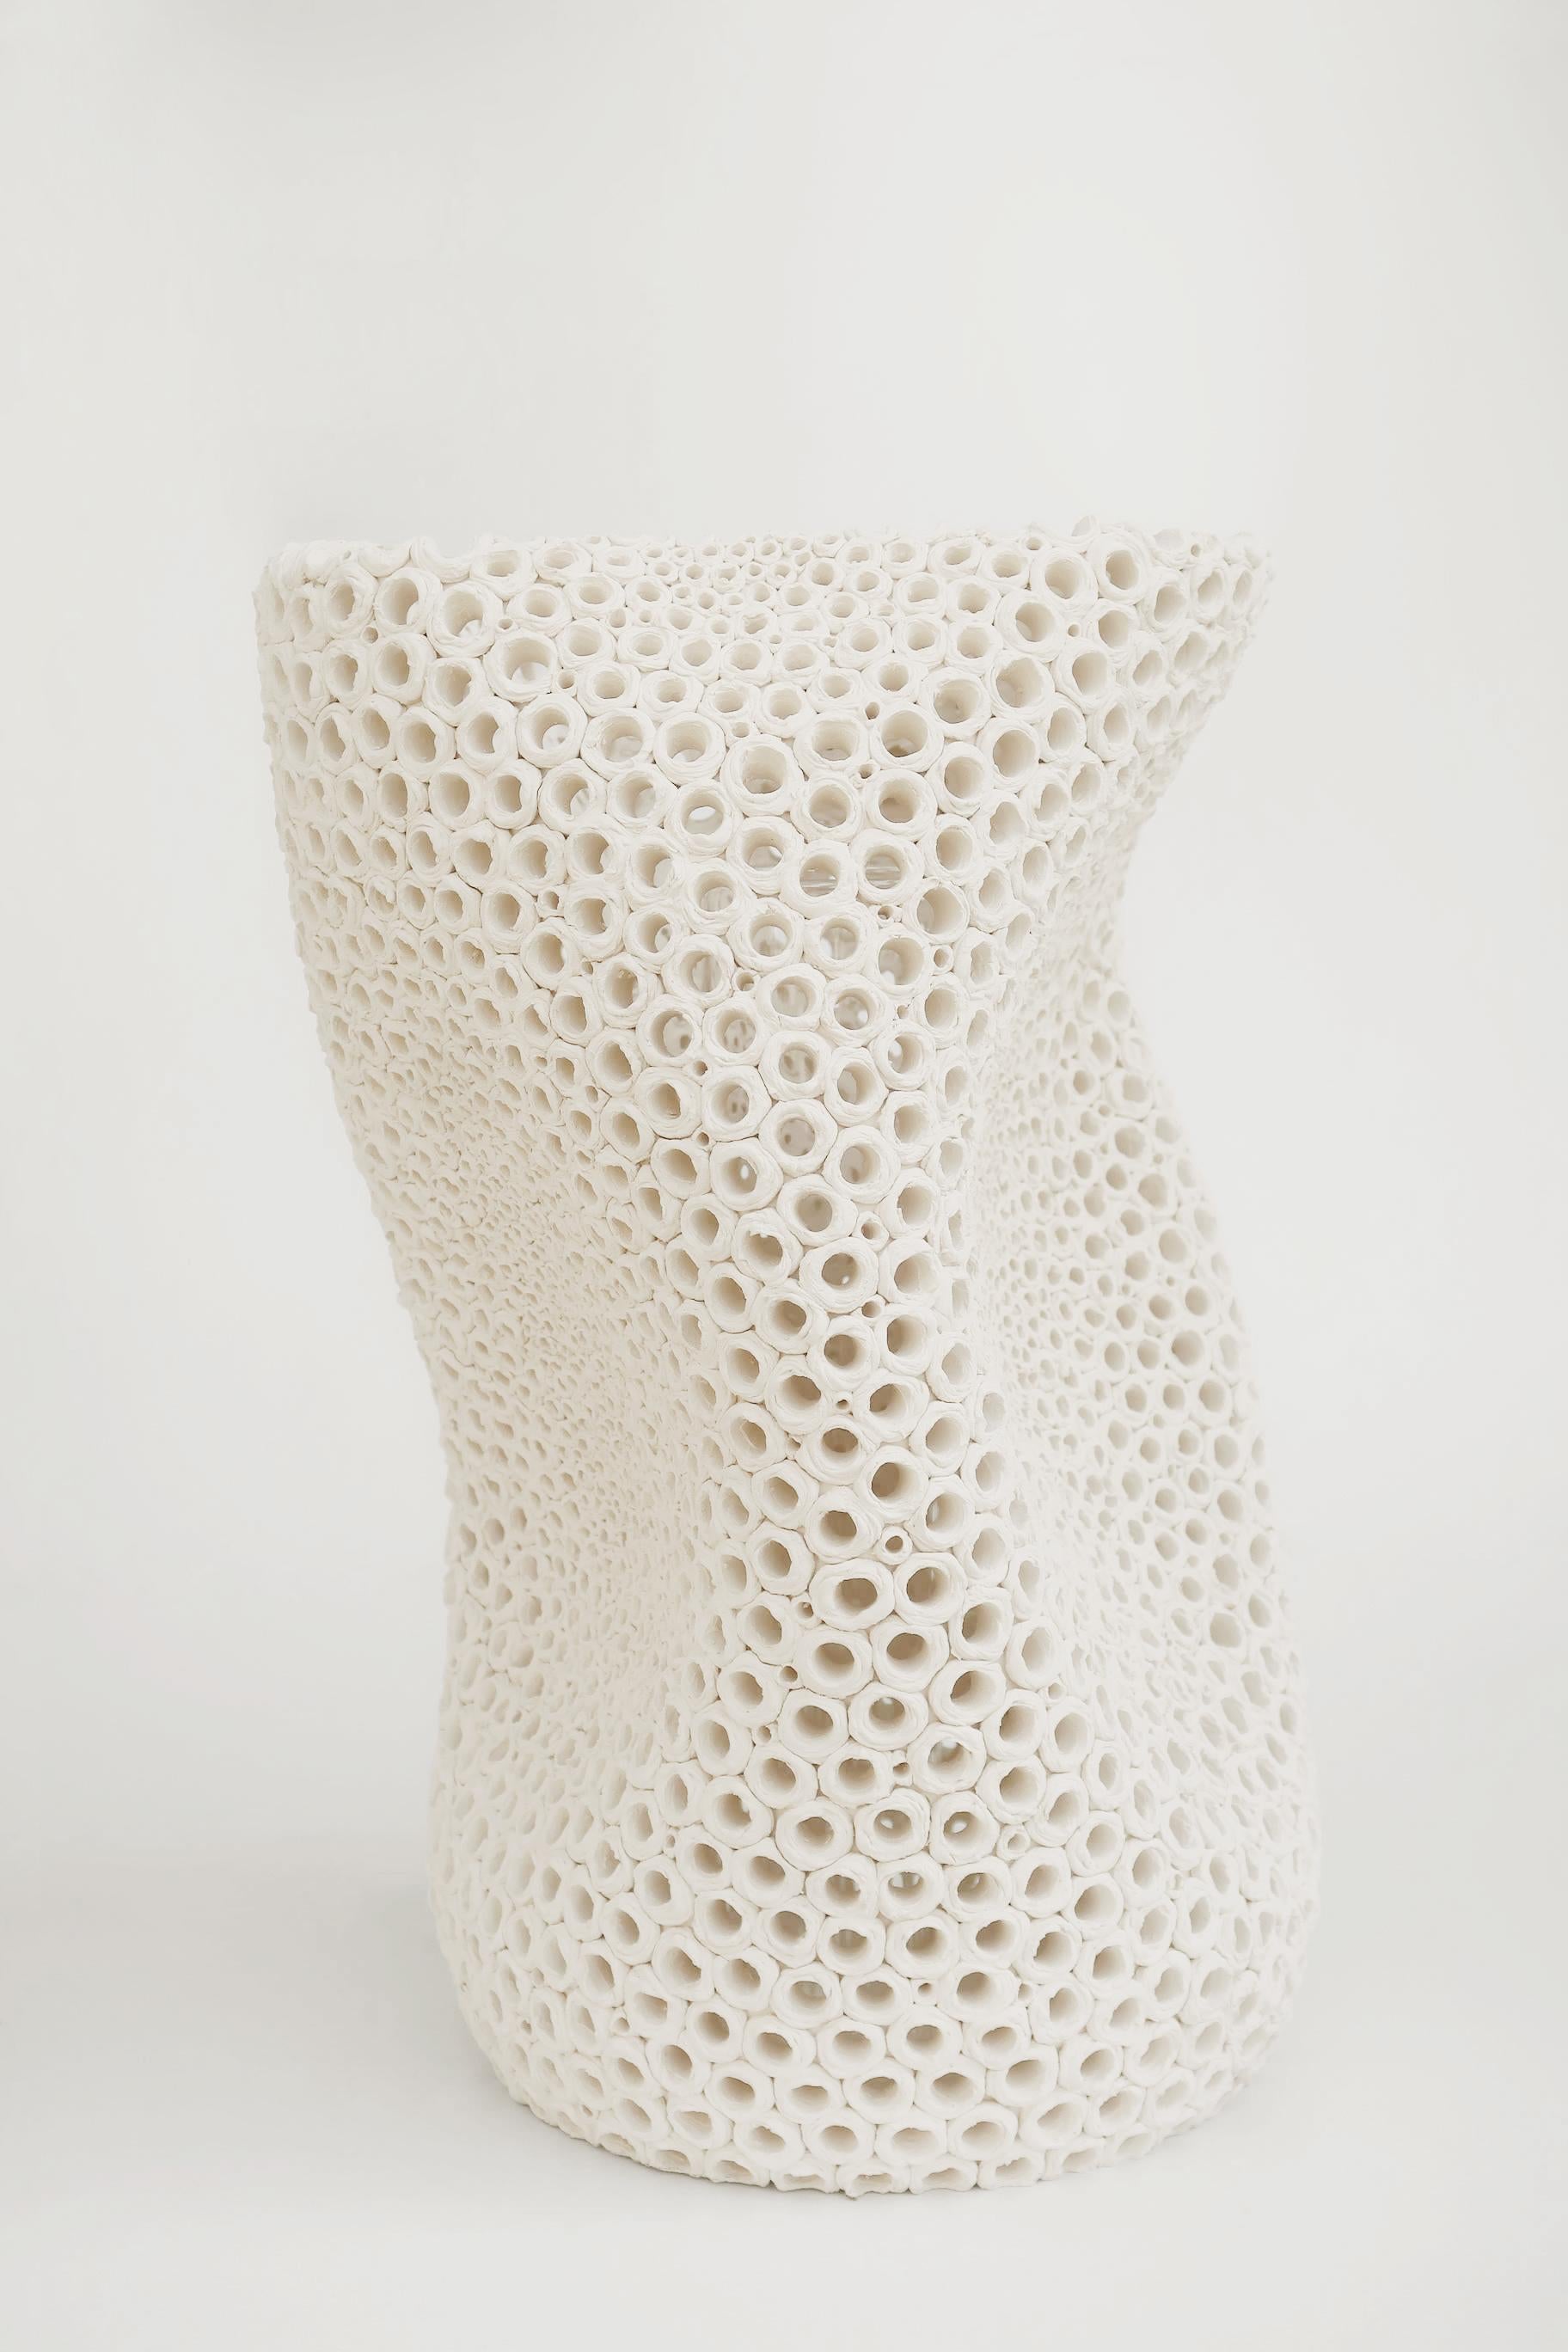 Undulating Hand-Pierced Earthenware Vase aus Steingut in limitierter Auflage von Gilles Caffier (Handgefertigt) im Angebot